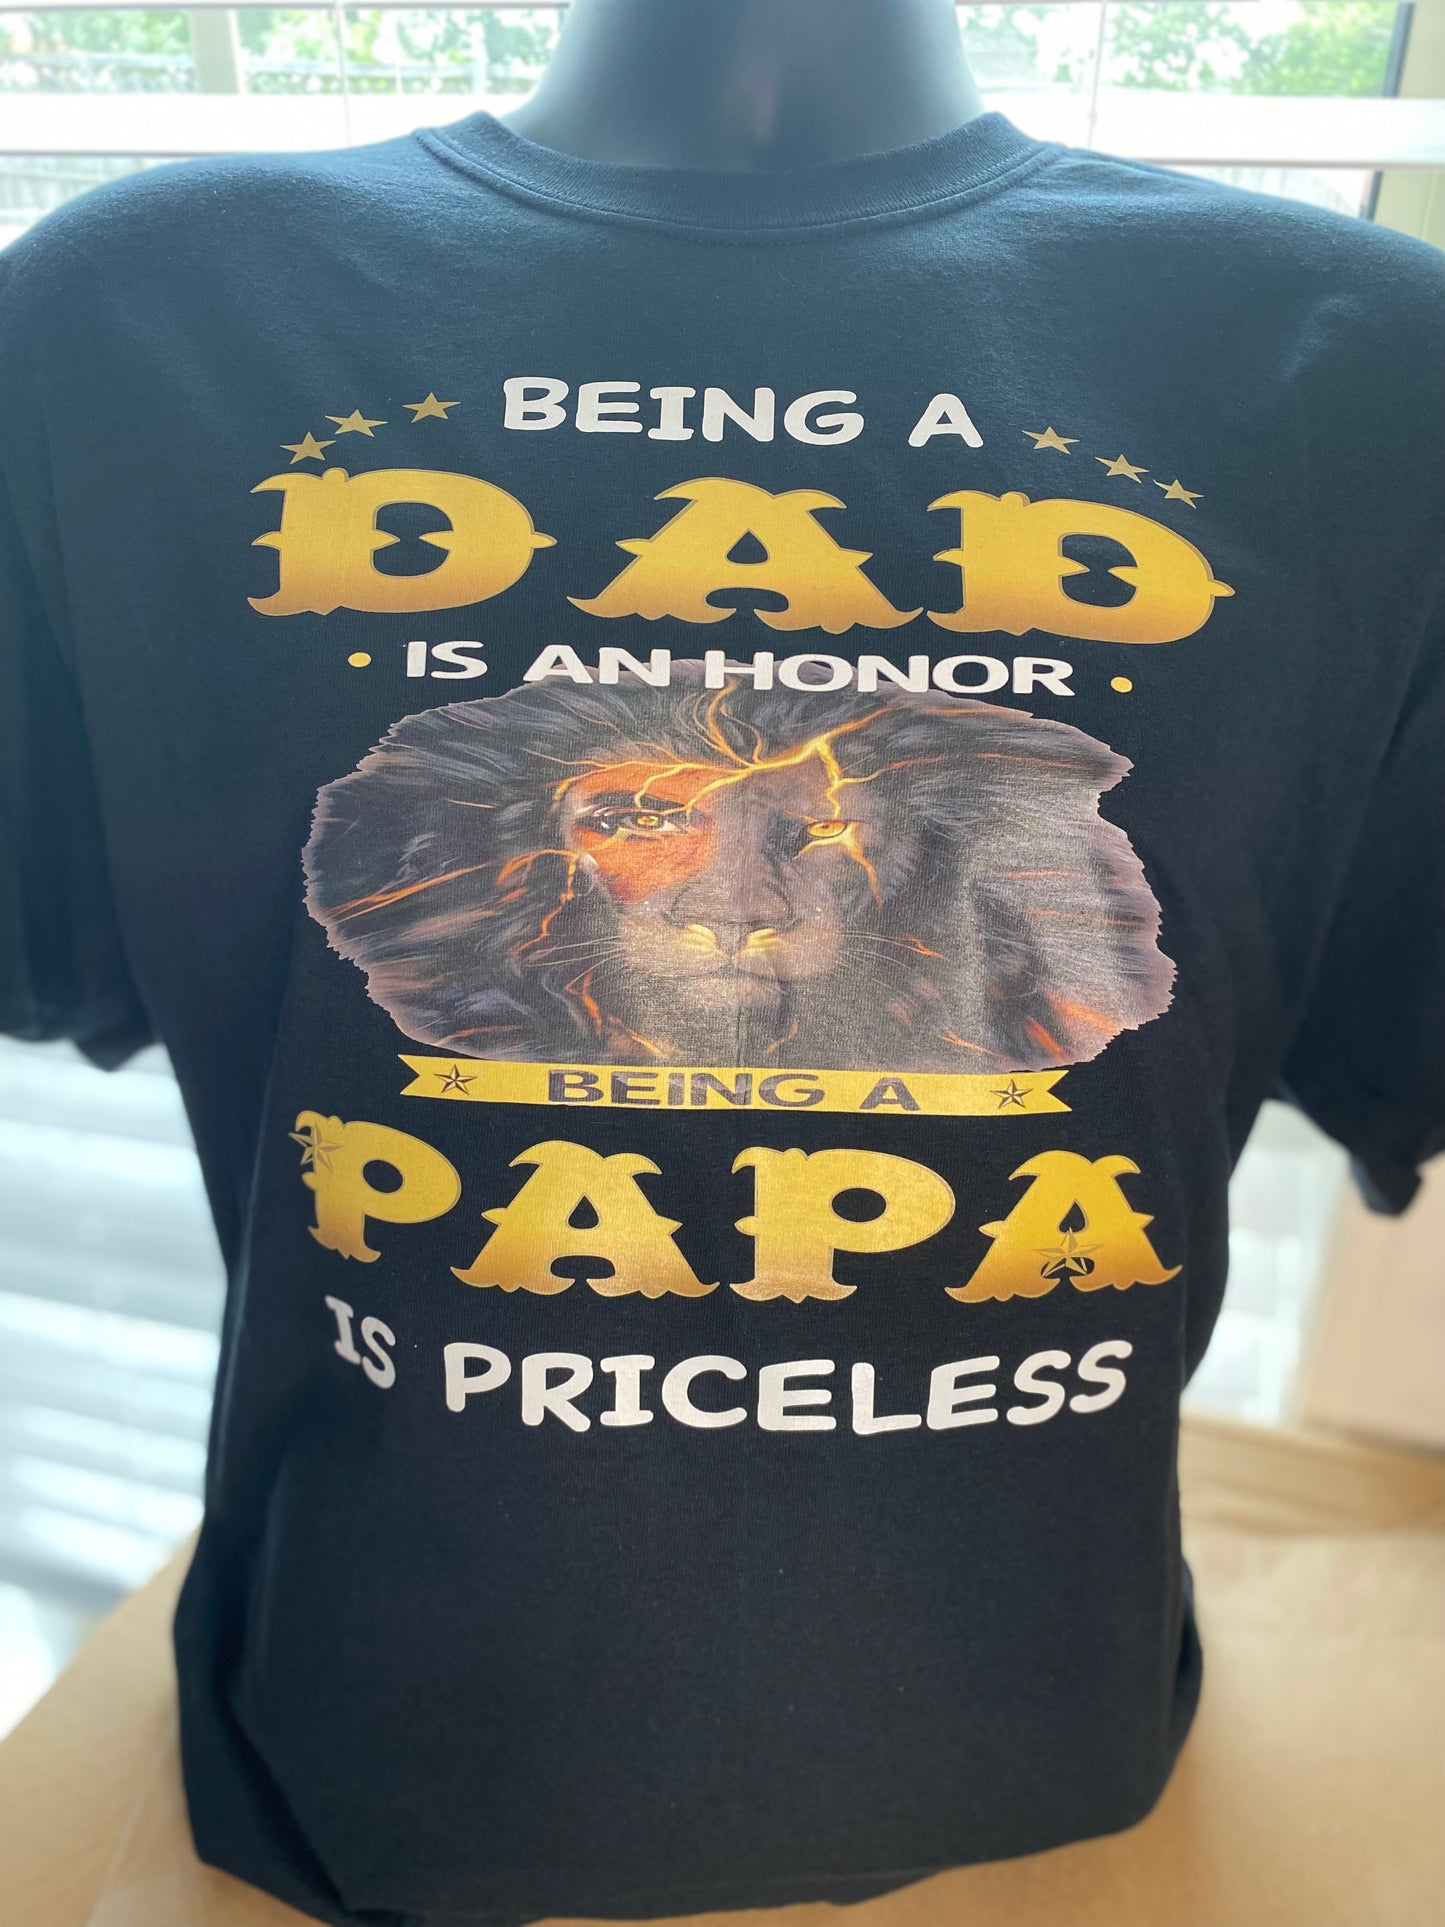 grandpa shirts